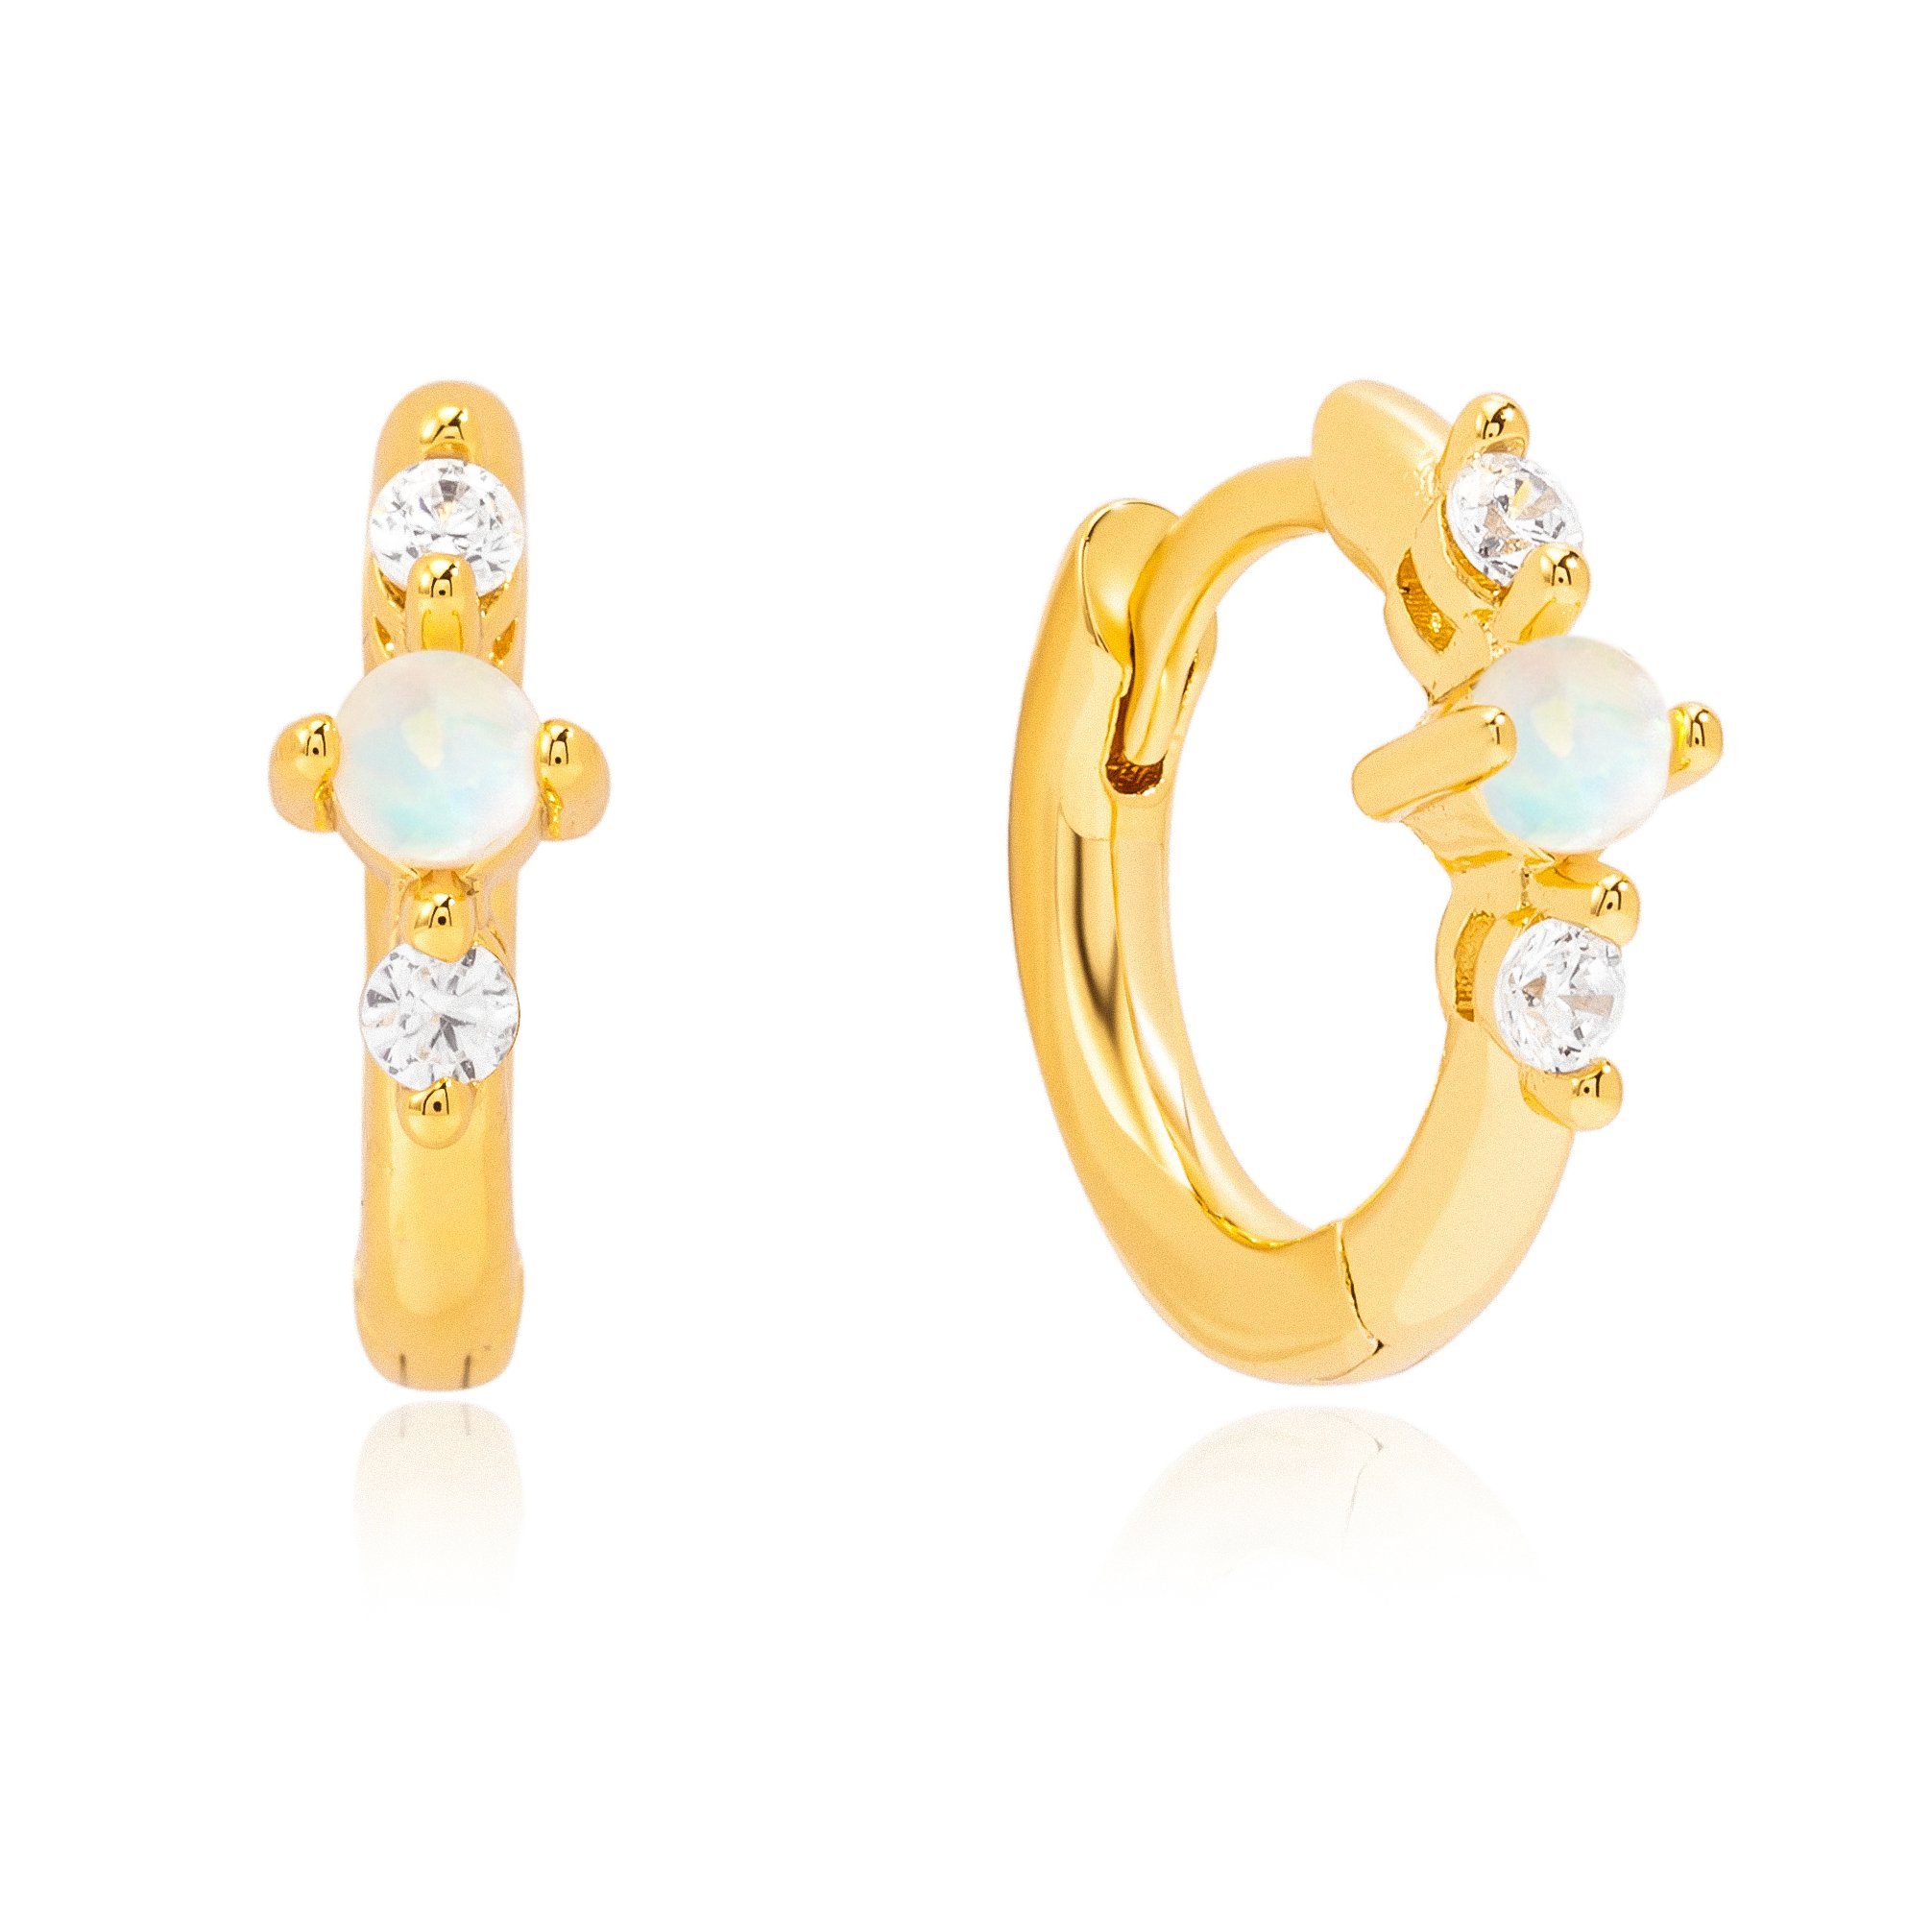 Brandlinger Paar Creolen Ohrringe Silber Opal Brisbane, Weißer Zirkoniasteine 925 vergoldet, weiße und